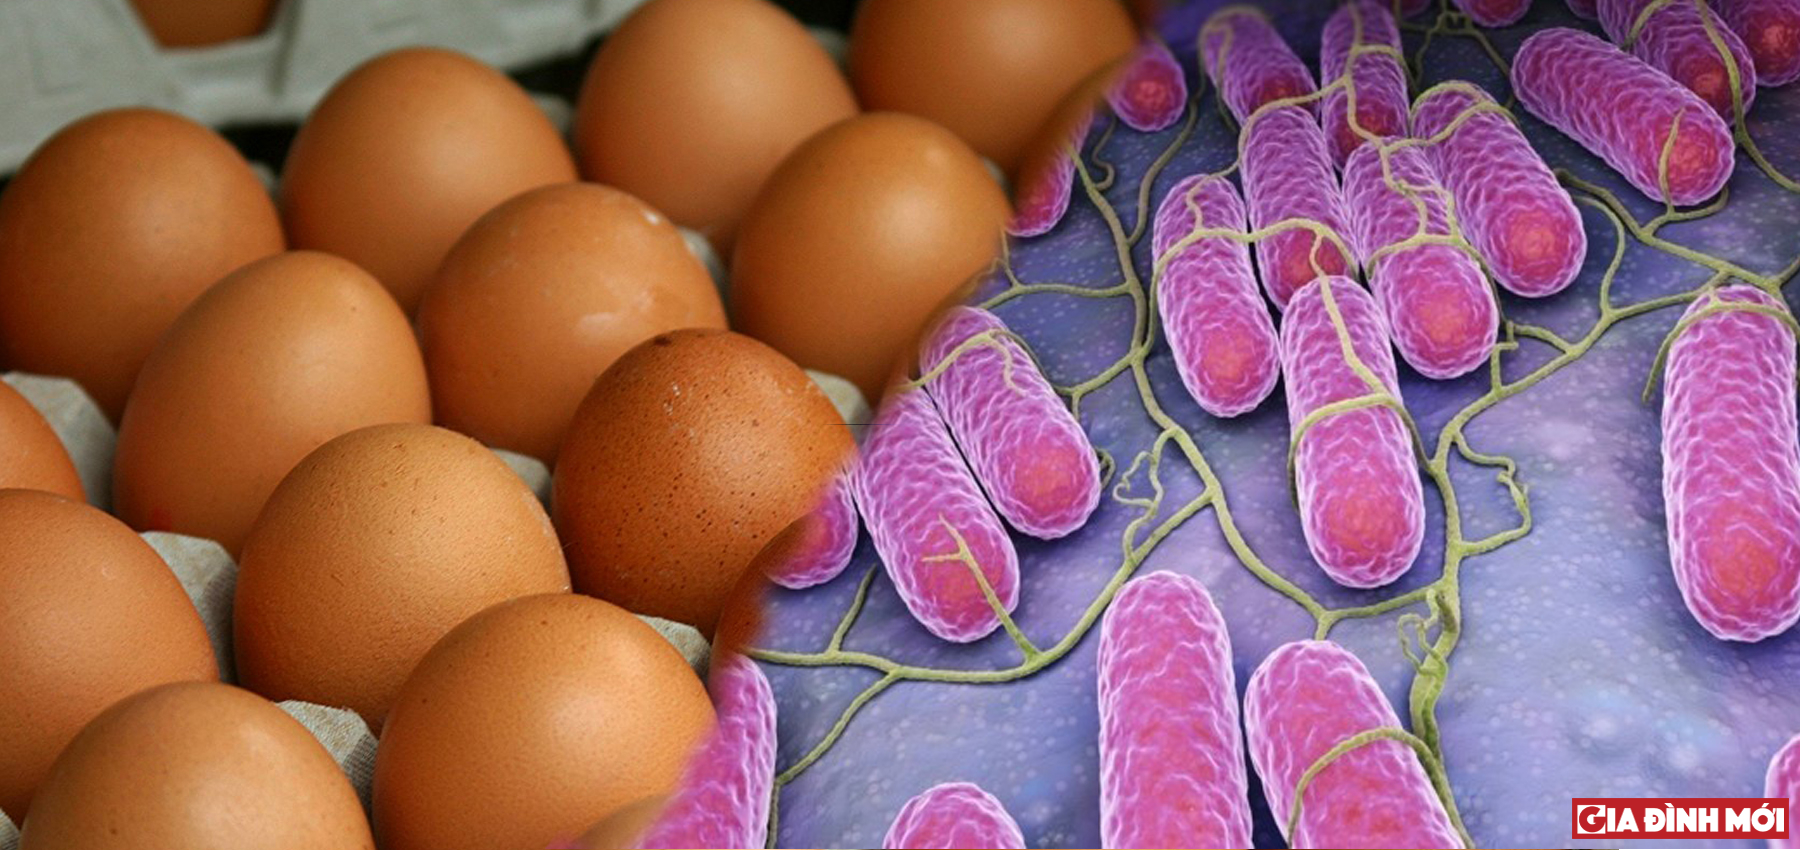 207 triệu quả trứng nghi nhiễm khuẩn salmonella đã làm 22 người bị ngộ độc ở Mỹ - Ảnh minh họa